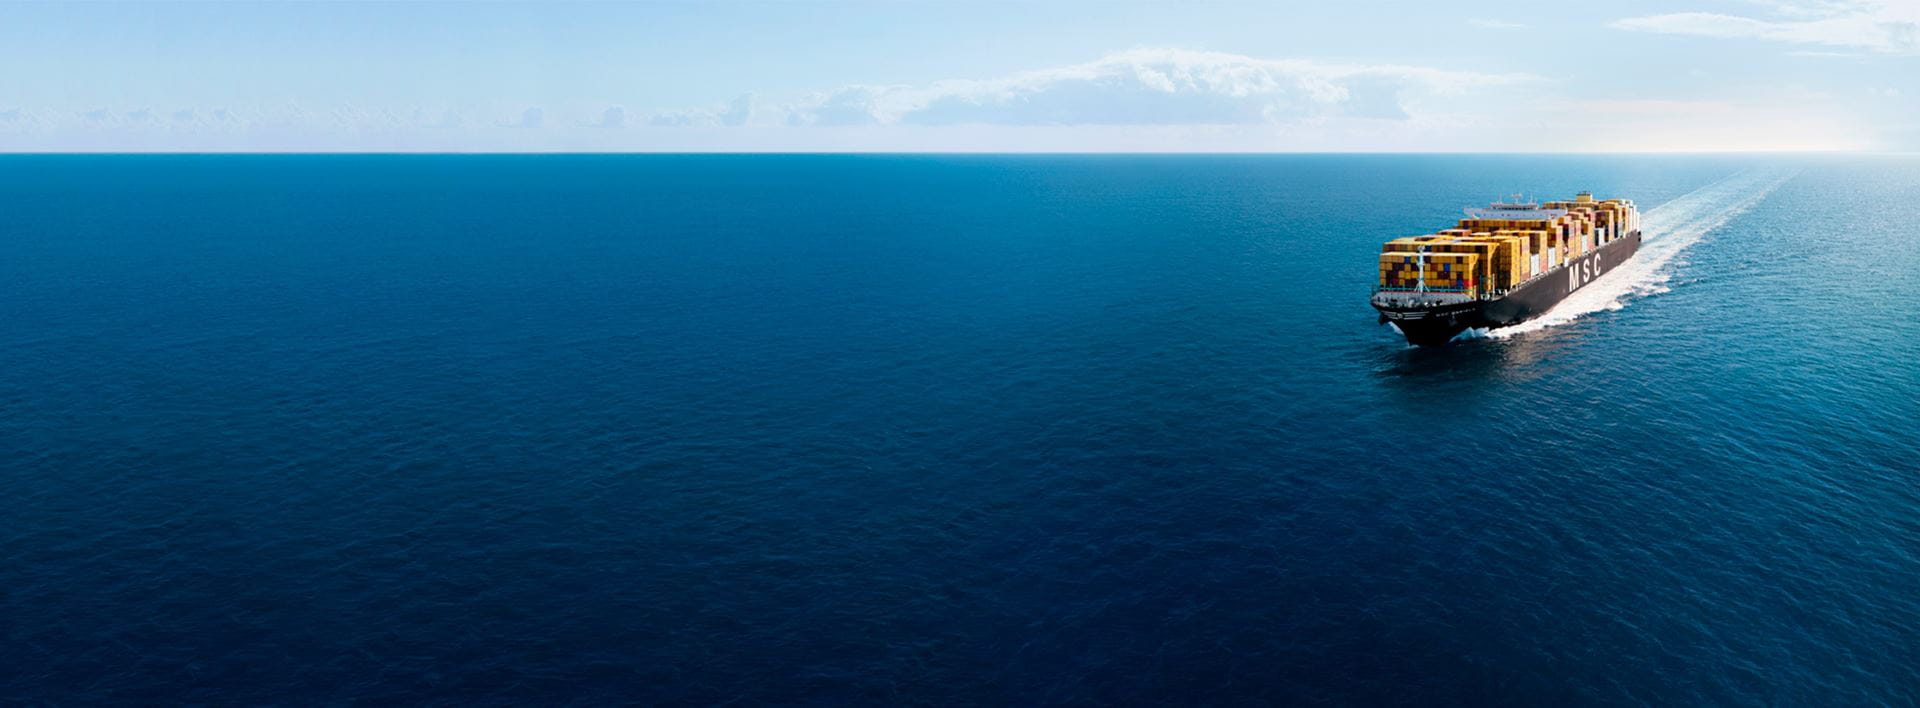 MSC vessel approaching in the deep blue sea